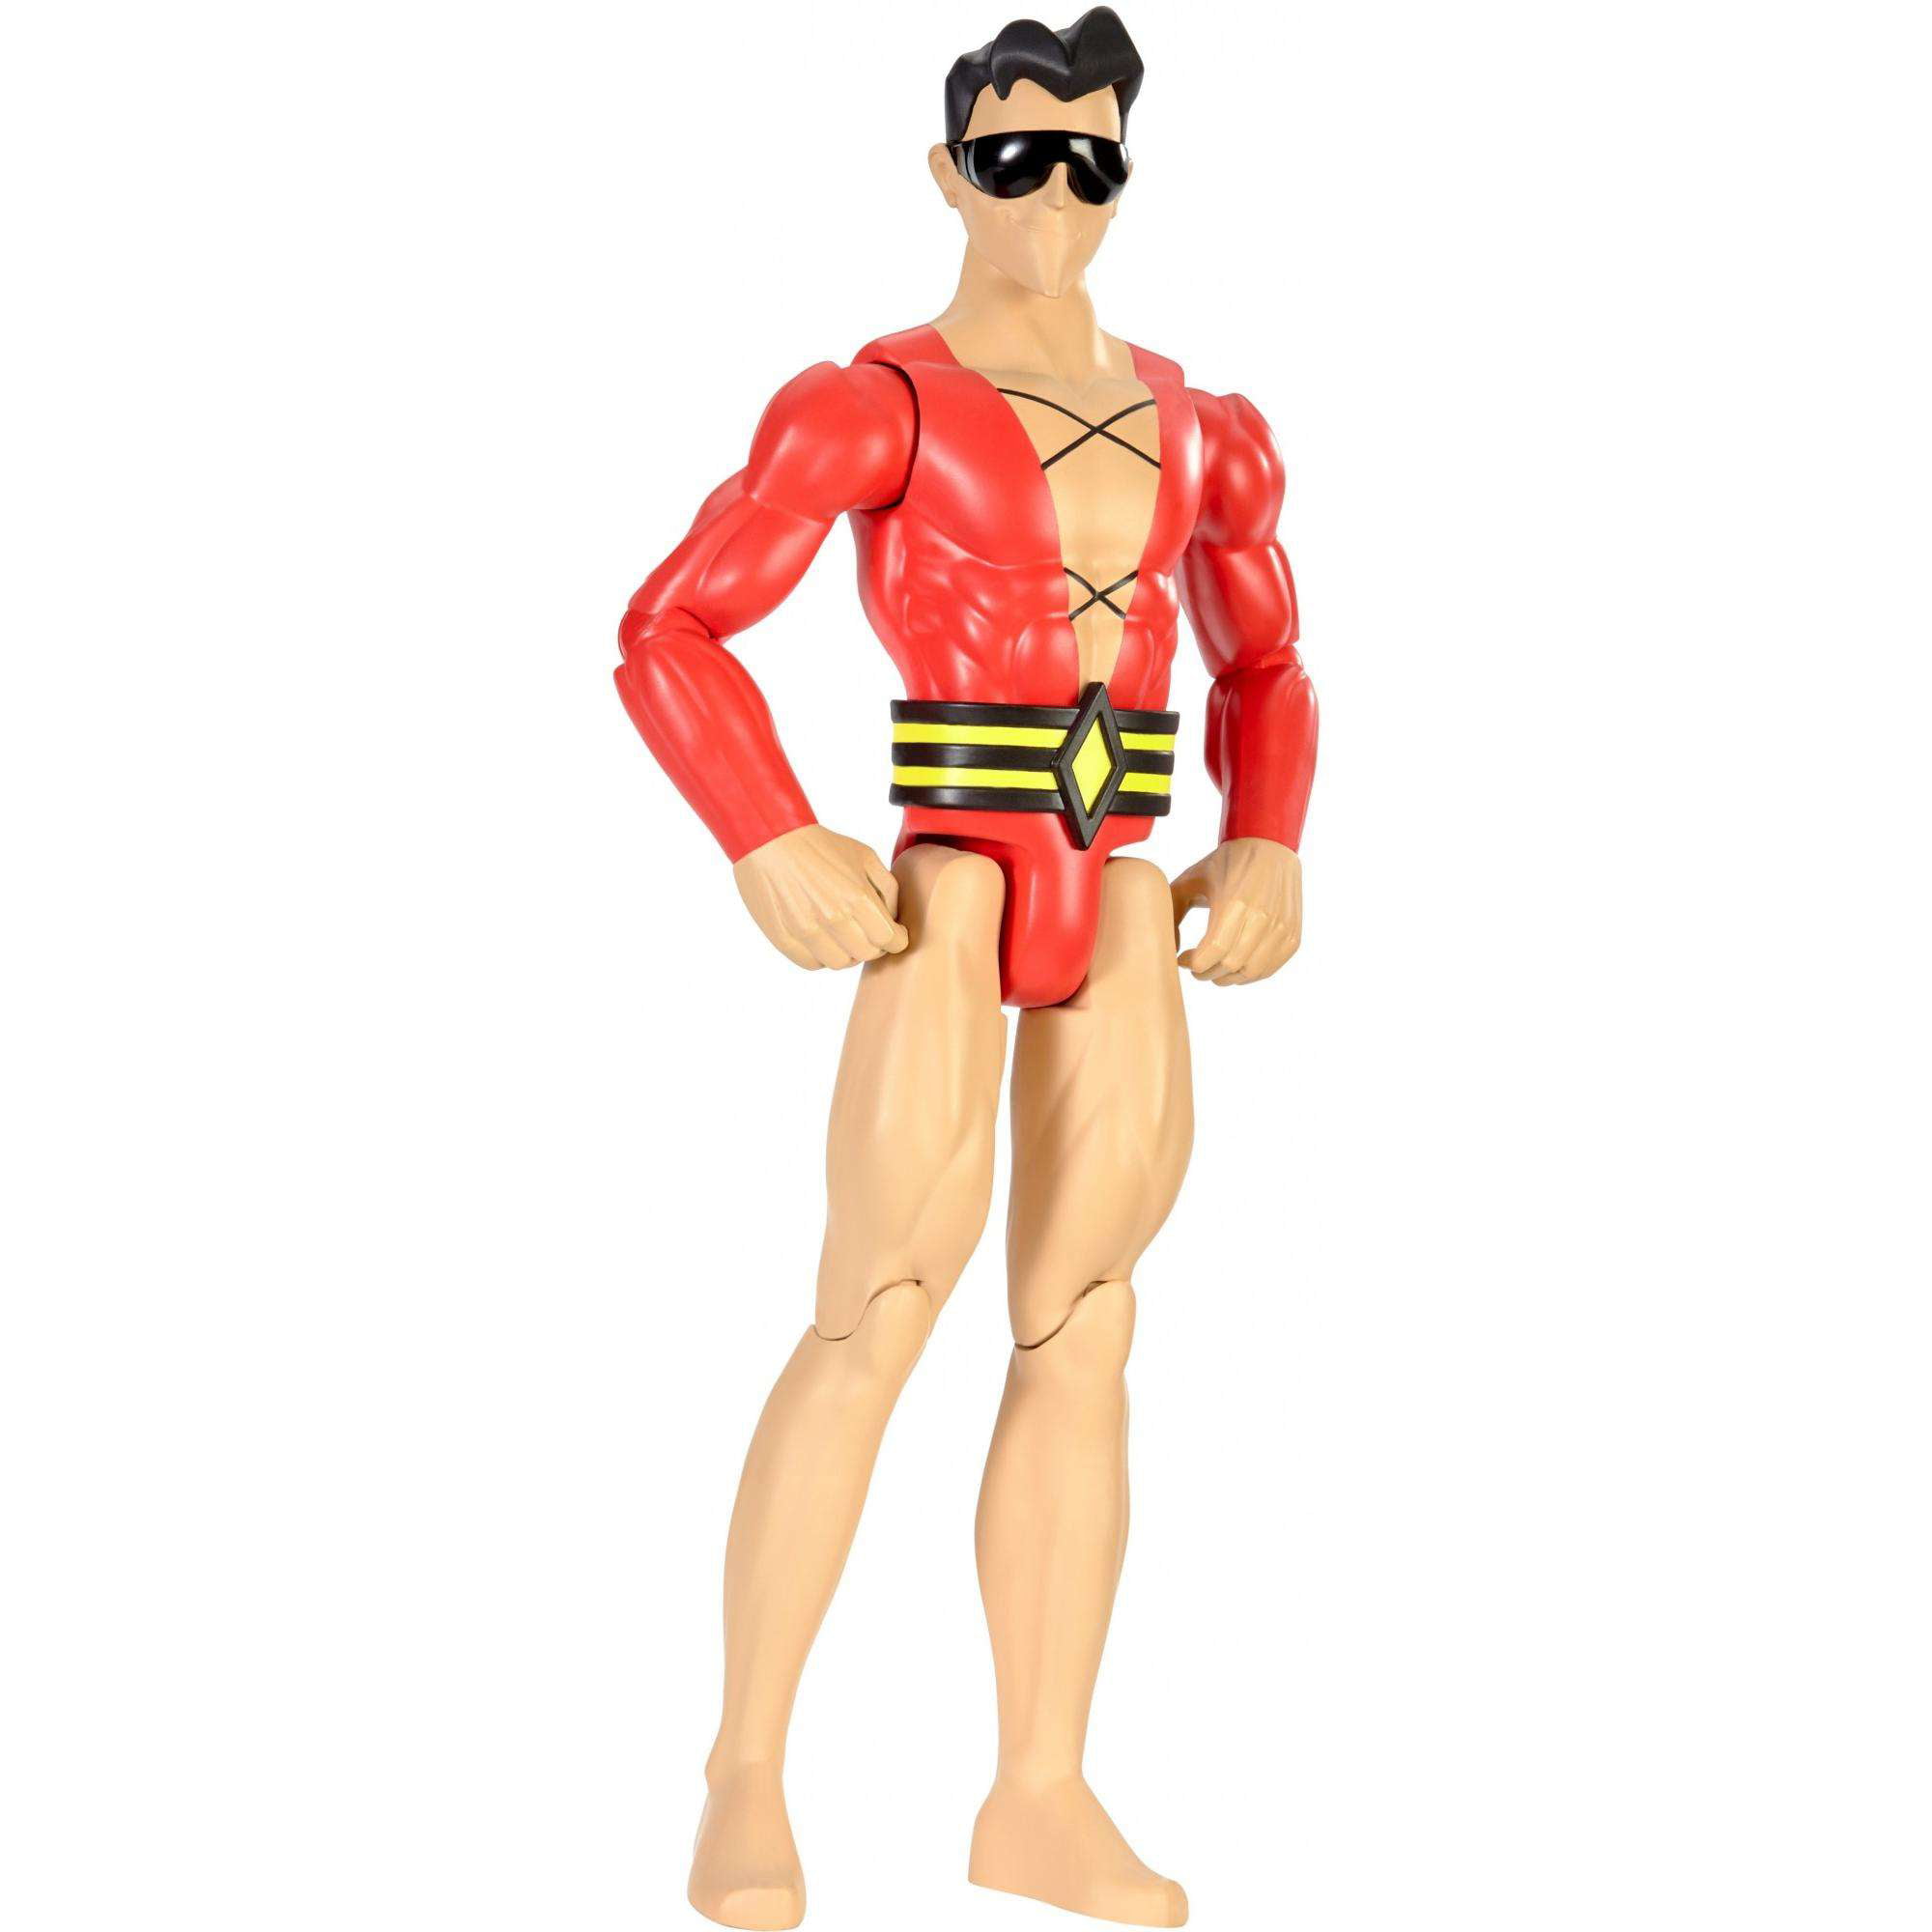 Details about   McDonalds BK Superman Batman Aquaman Plastic Man Action Figures Your Choice 